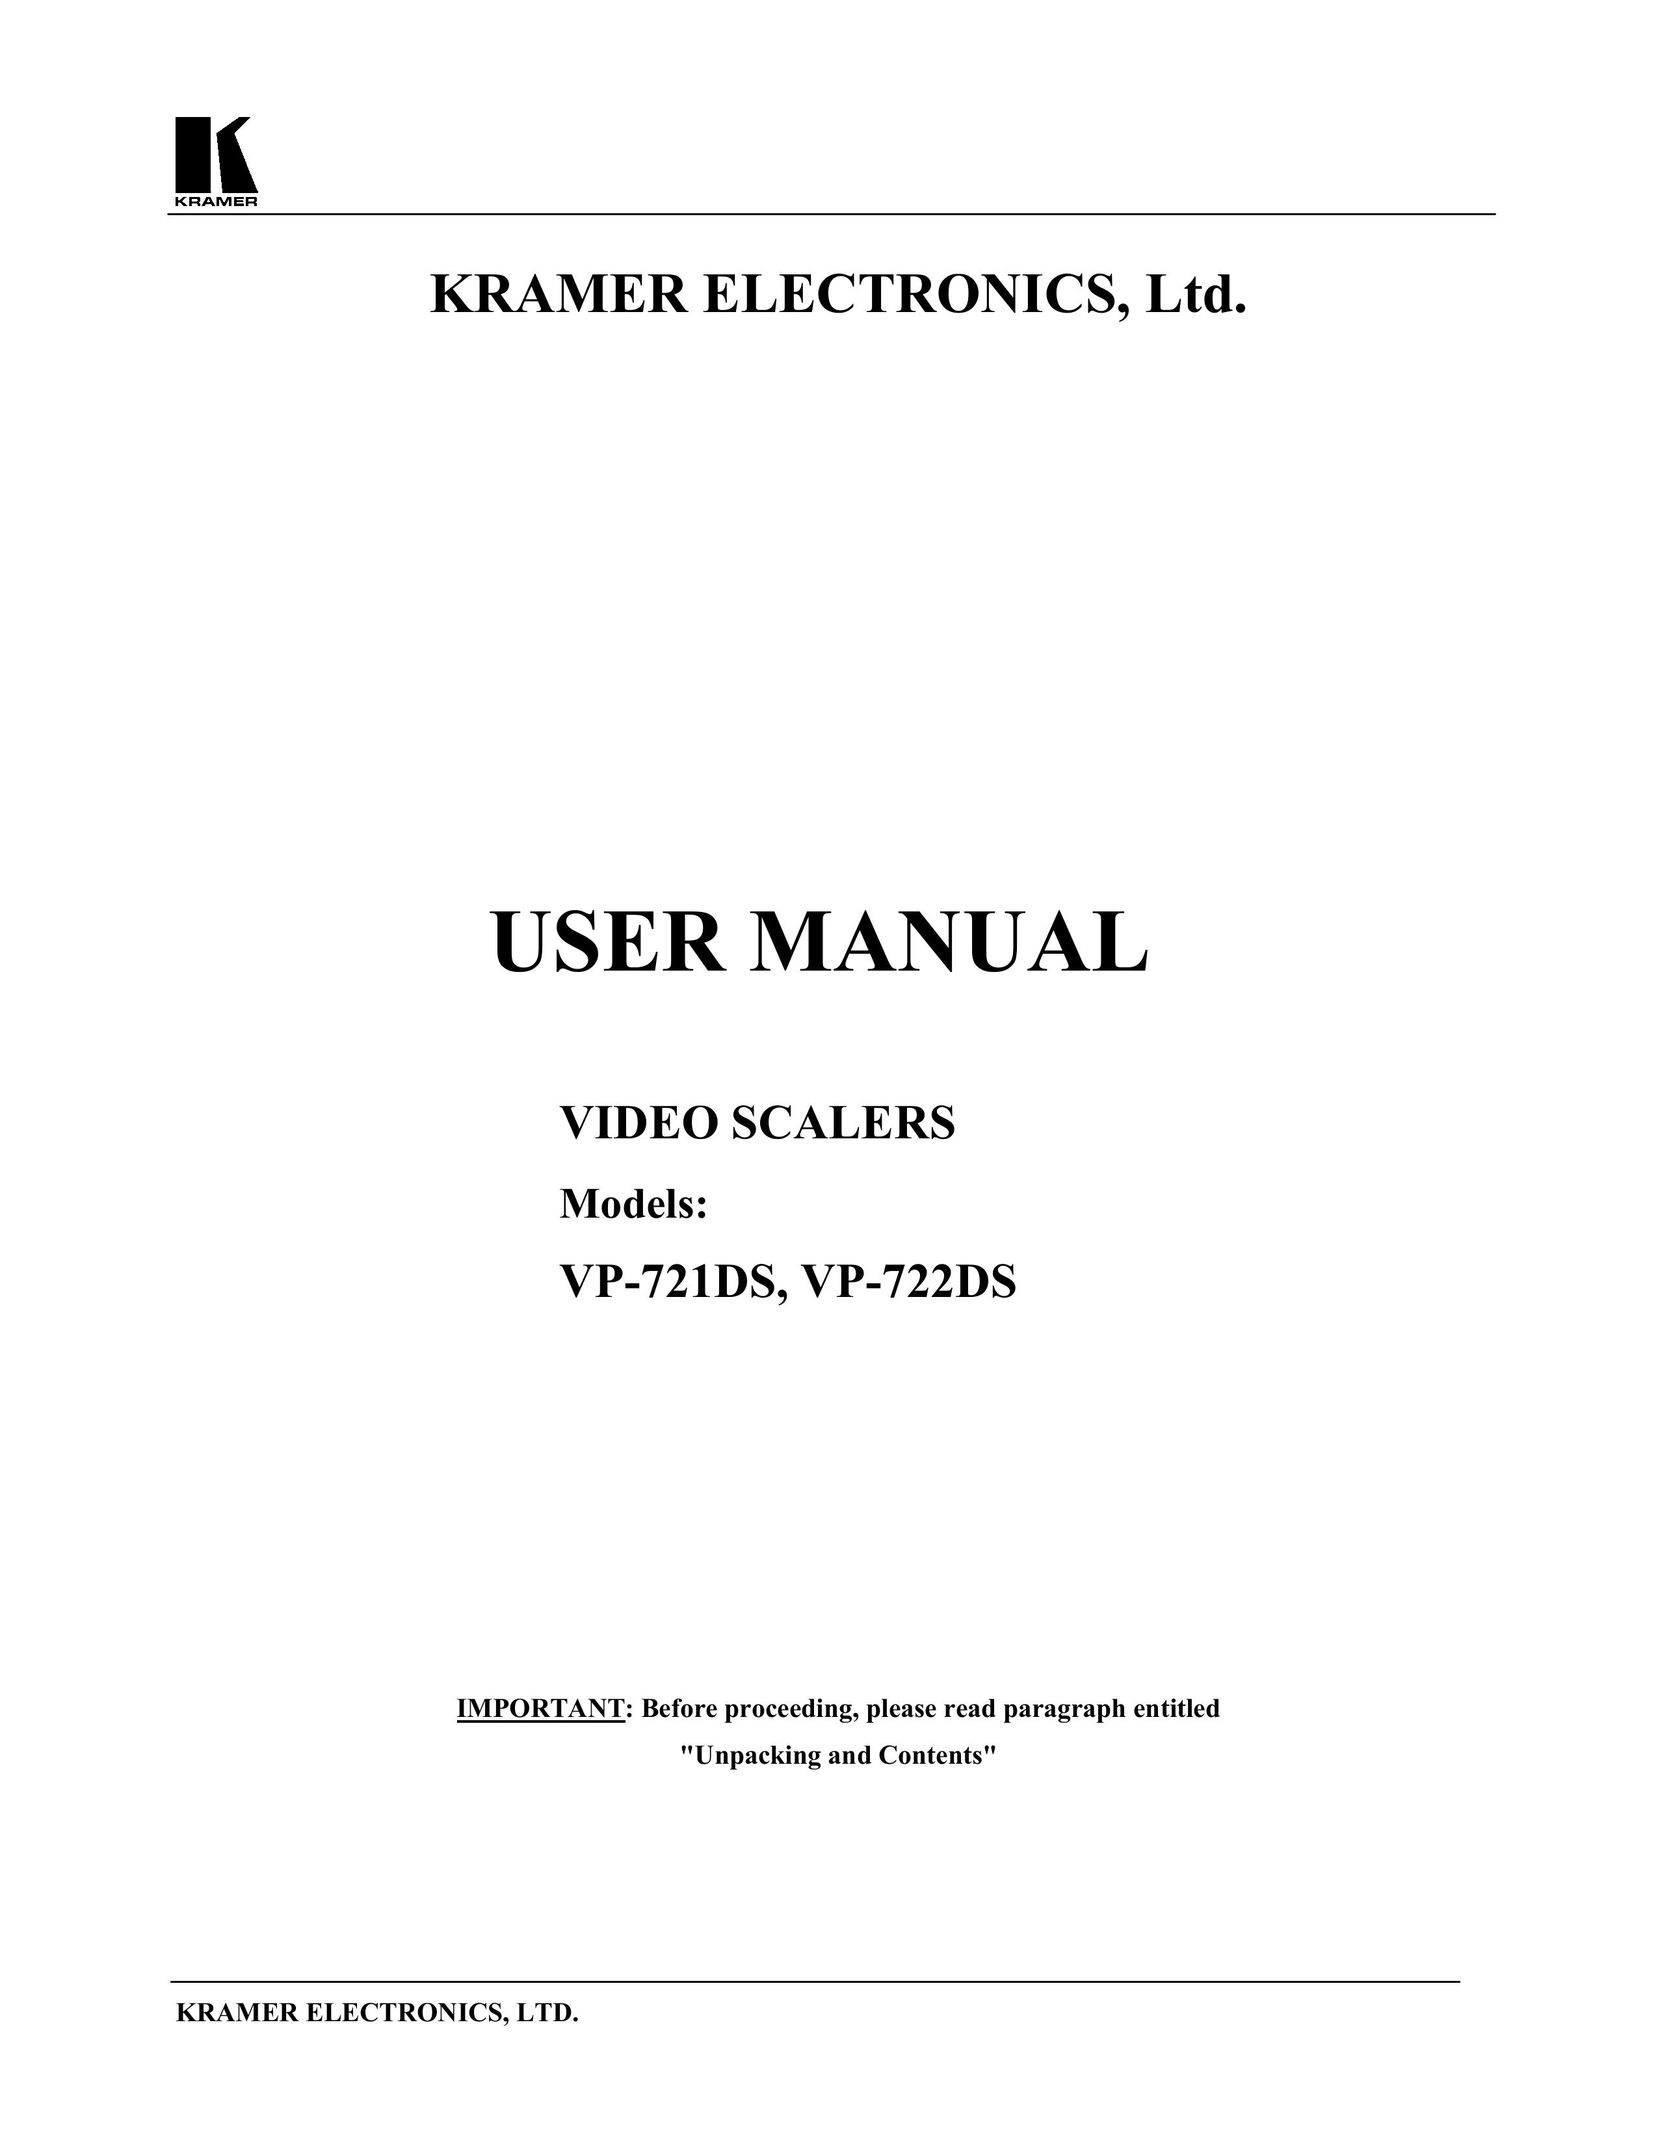 Kramer Electronics VP-721DS Webcam User Manual